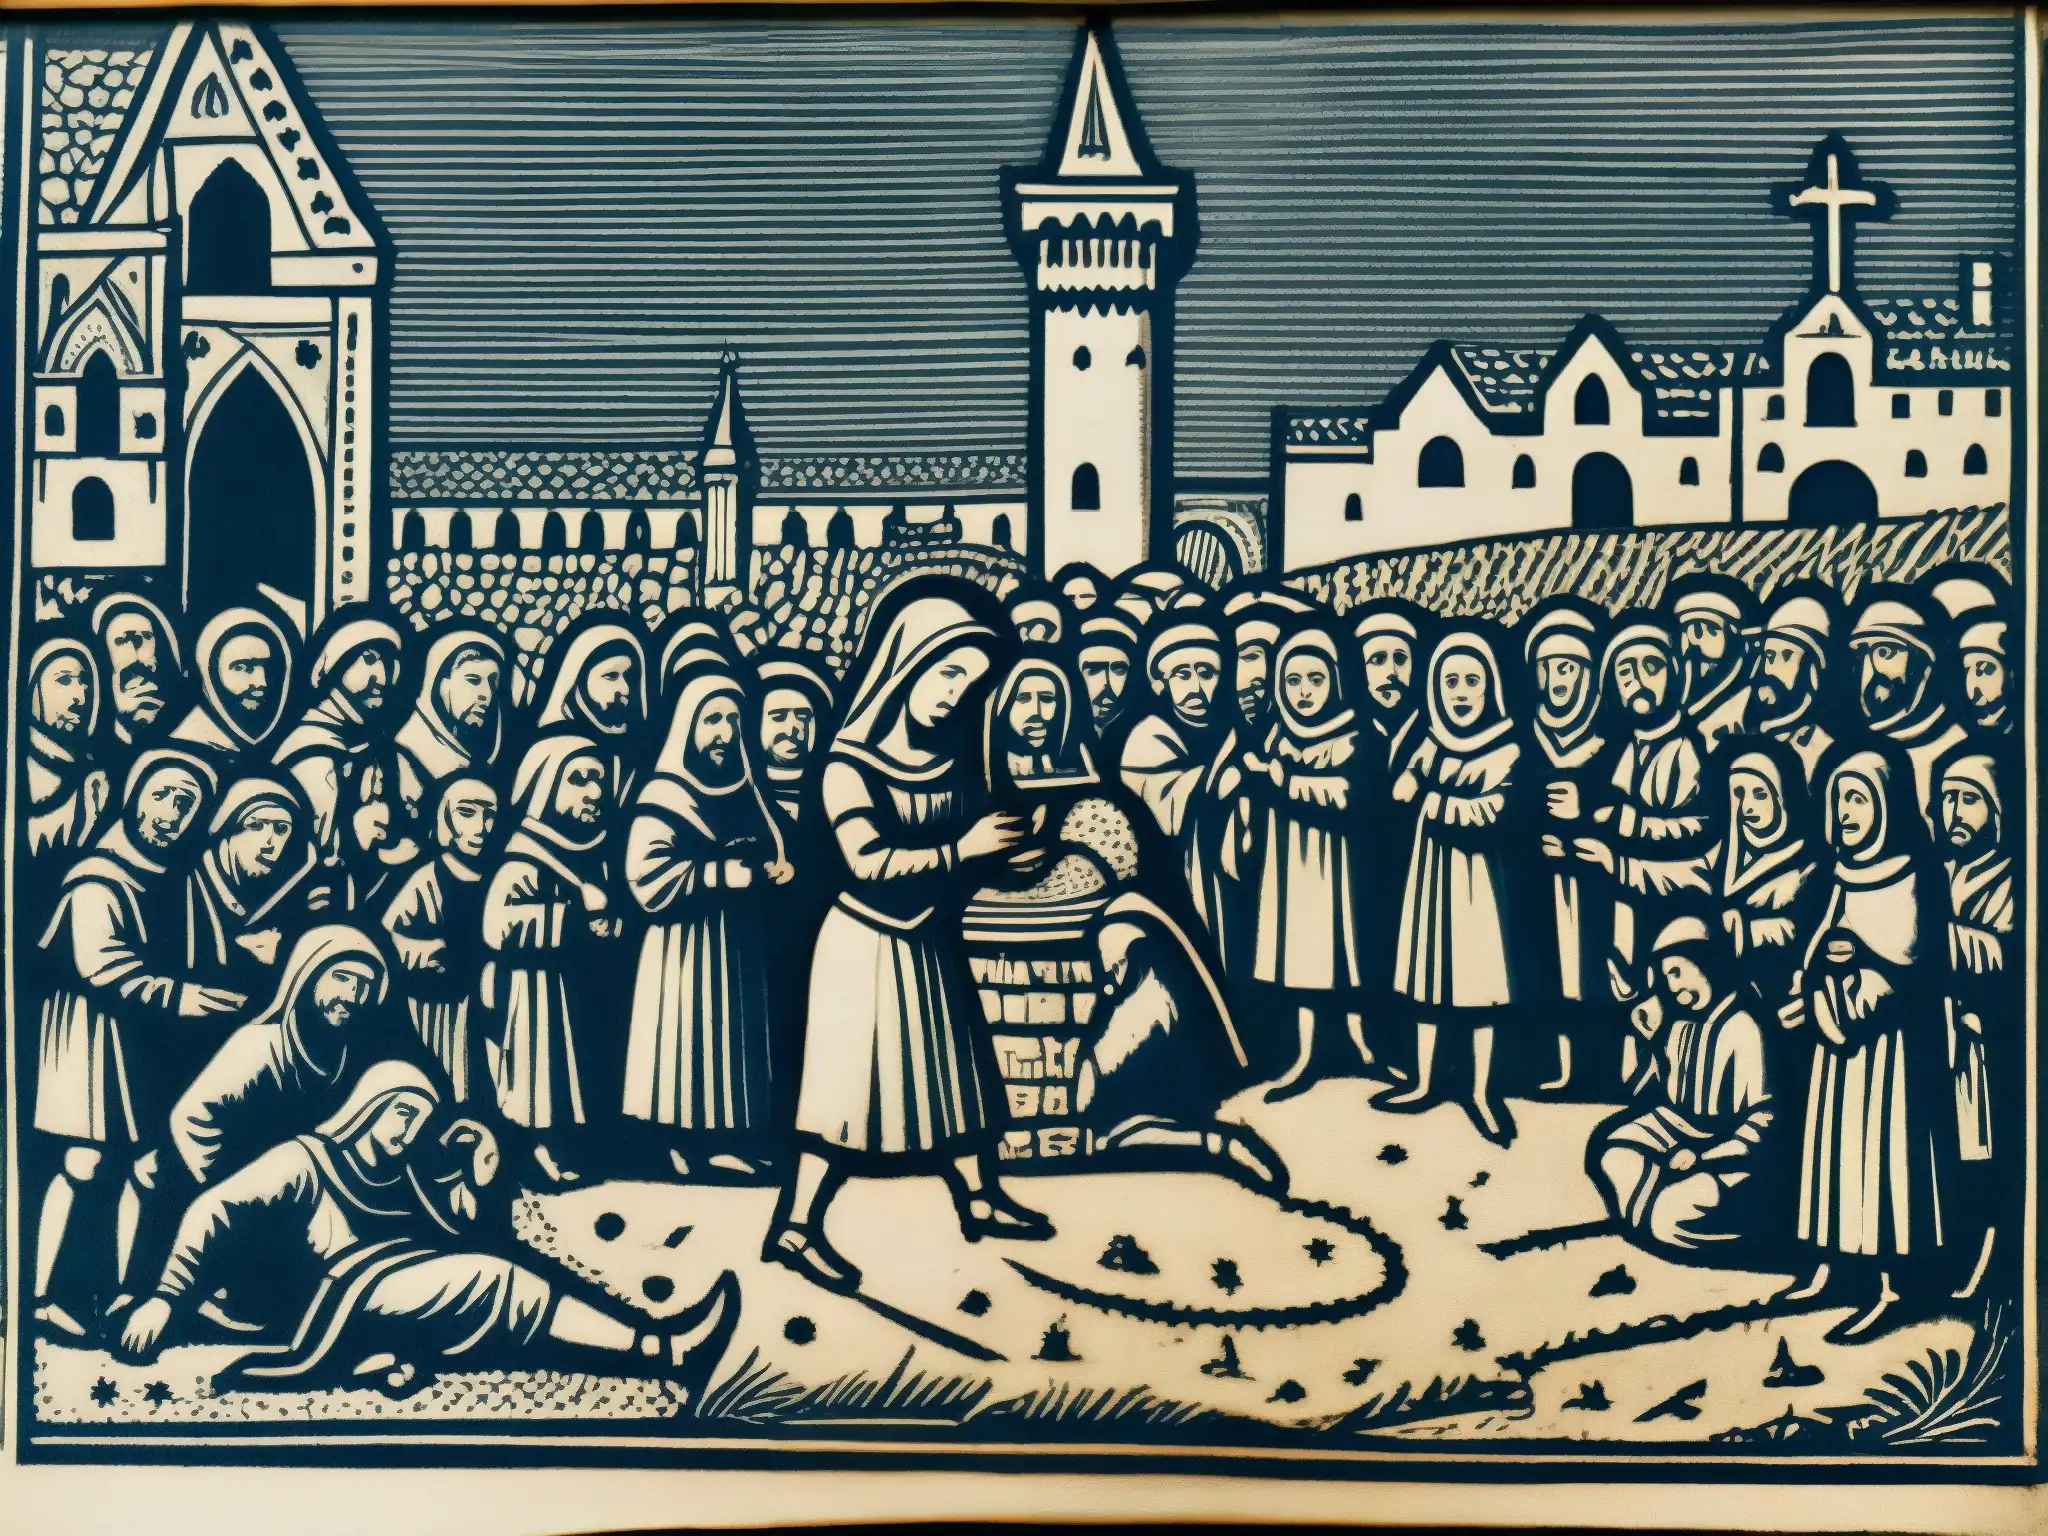 Una grabado medieval de una mujer con herraduras en las manos, rodeada de observadores y figuras religiosas en una plaza